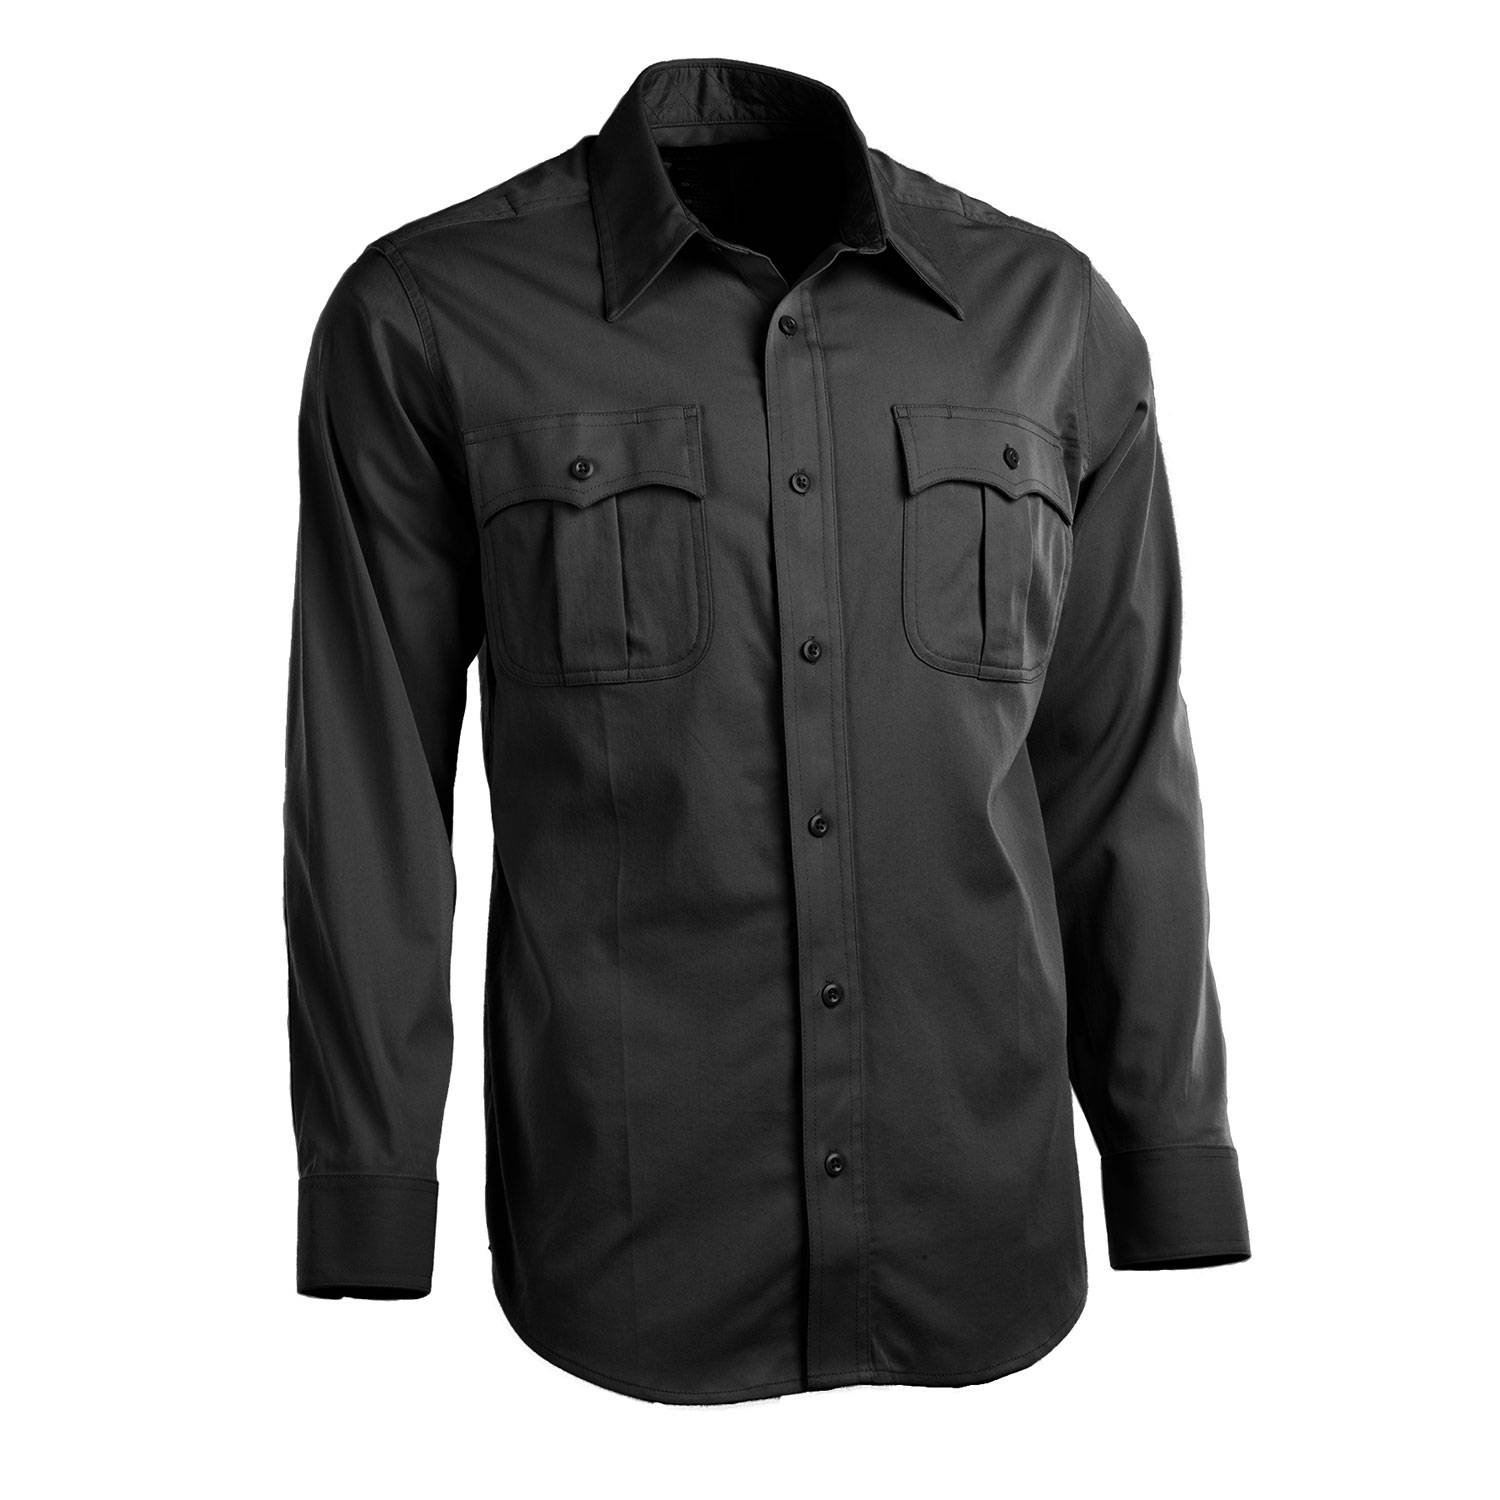 5.11 Class A Flex-Tac Poly/Wool Twill Long Sleeve Shirt